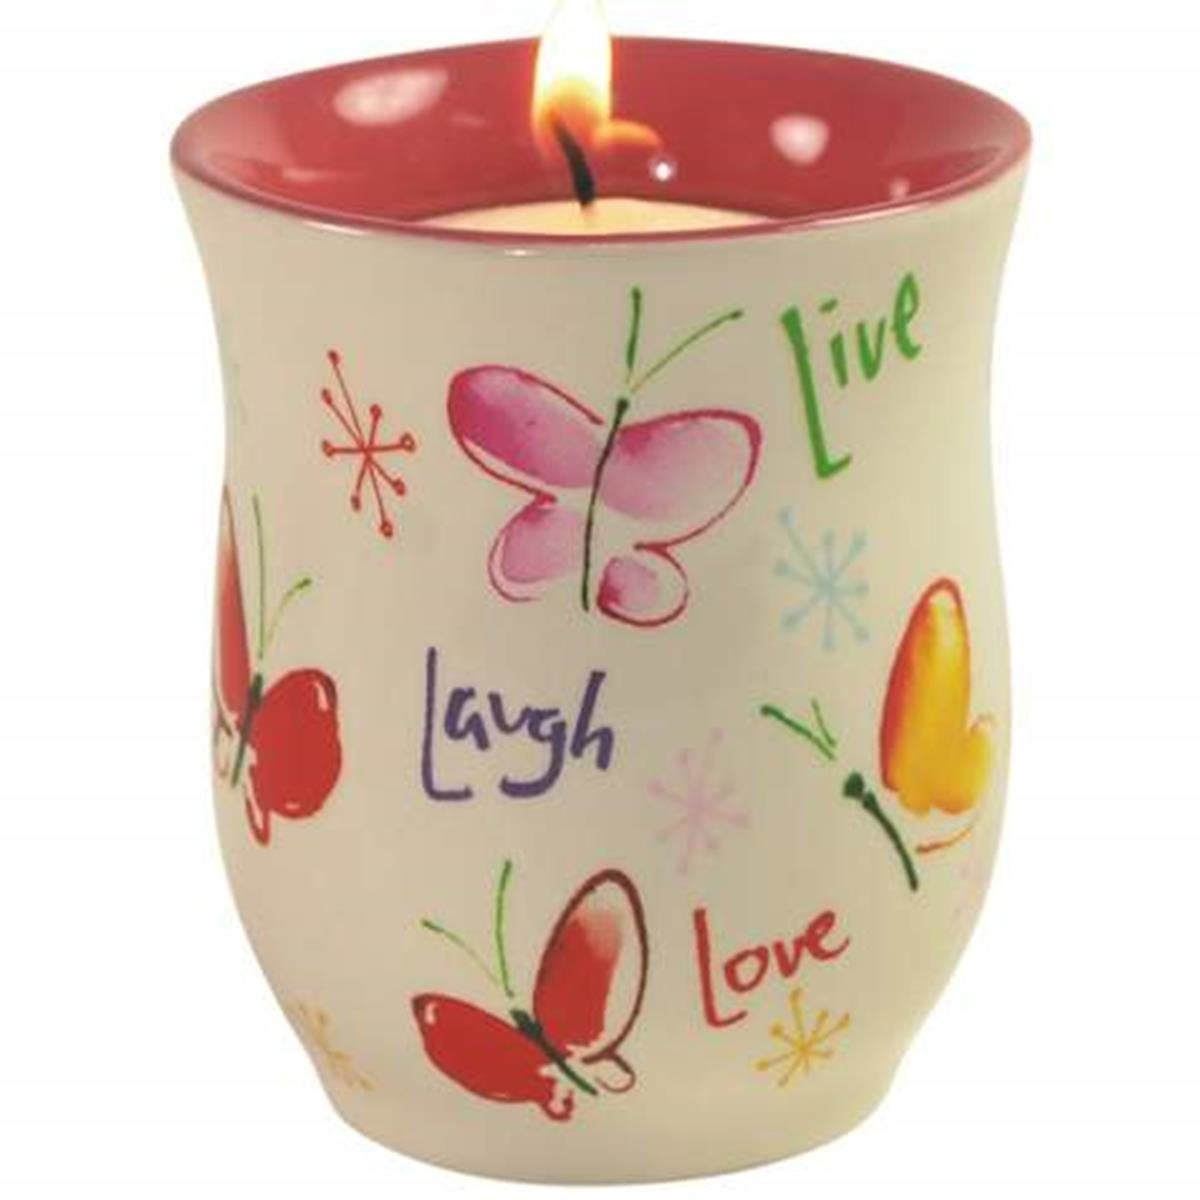 Live Love Laugh personnalisé Tea Light Candle Holder-Cadeau d'anniversaire pour son